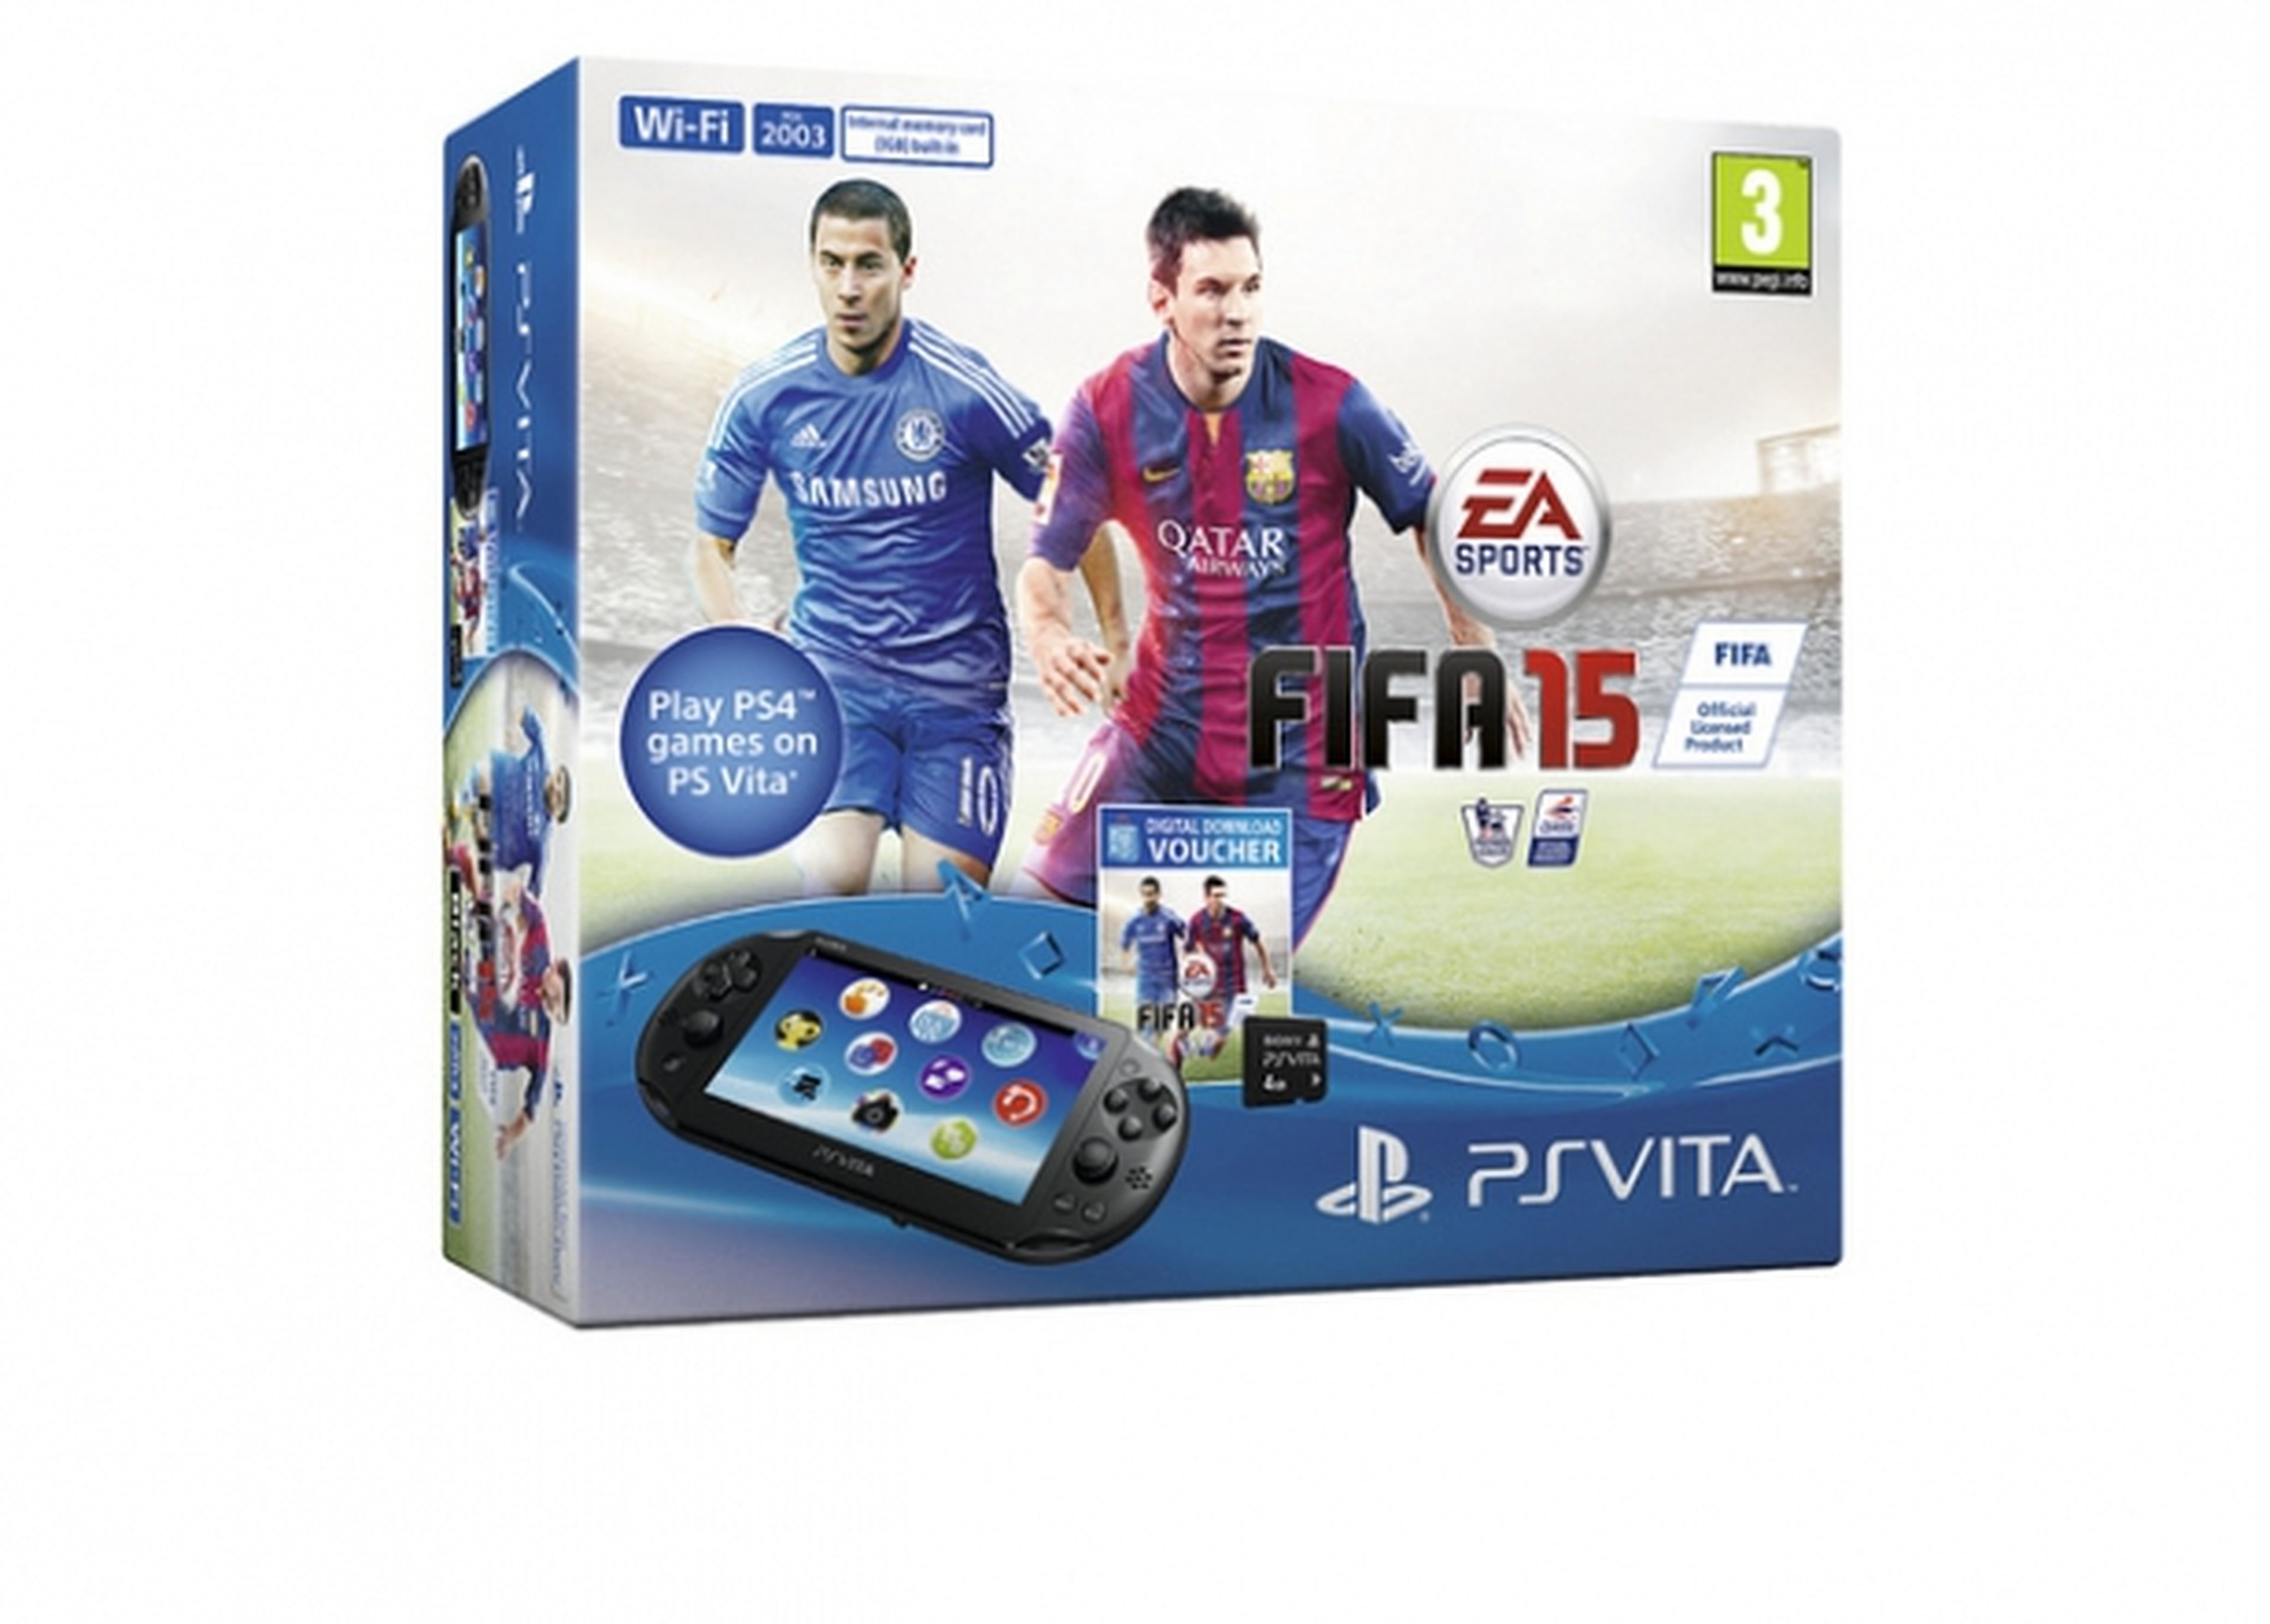 Anunciado pack de PS Vita y FIFA 15